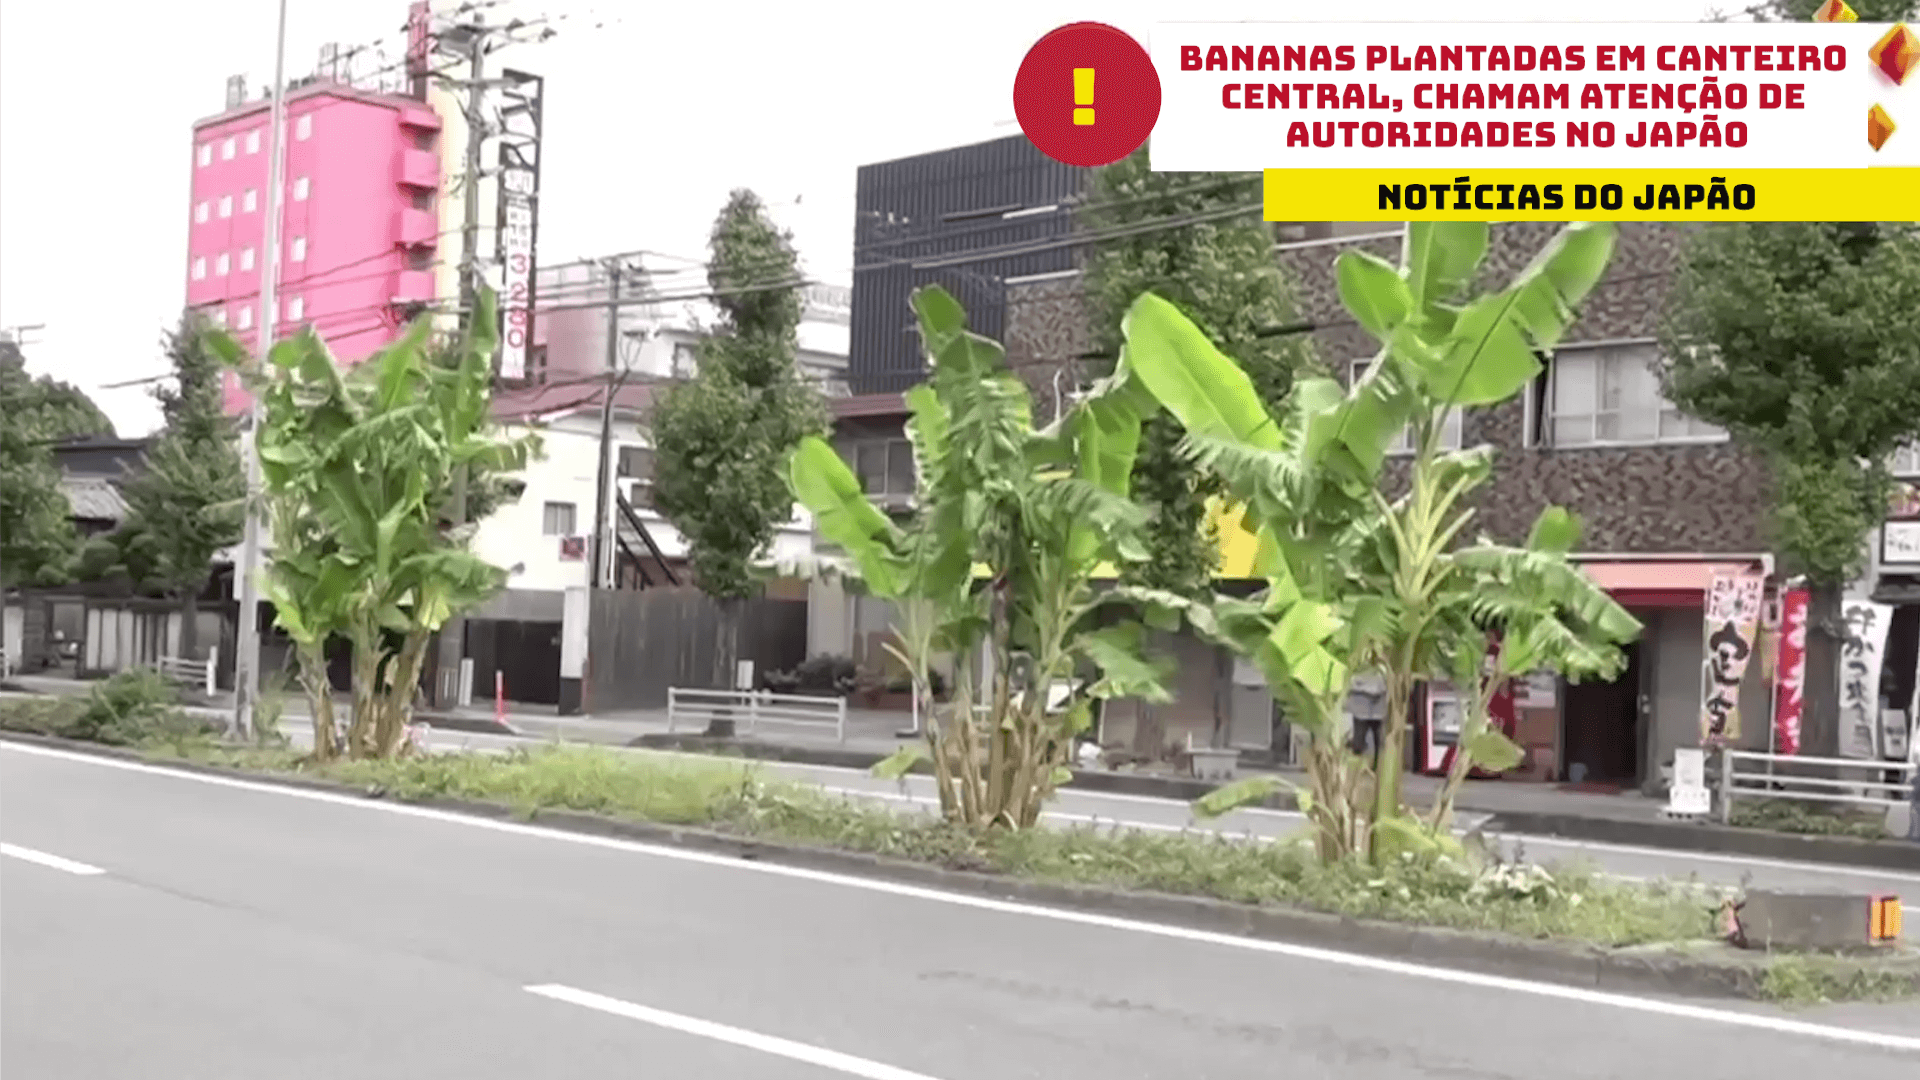 Bananas plantadas em canteiro central, chamam atenção de autoridades no Japão 